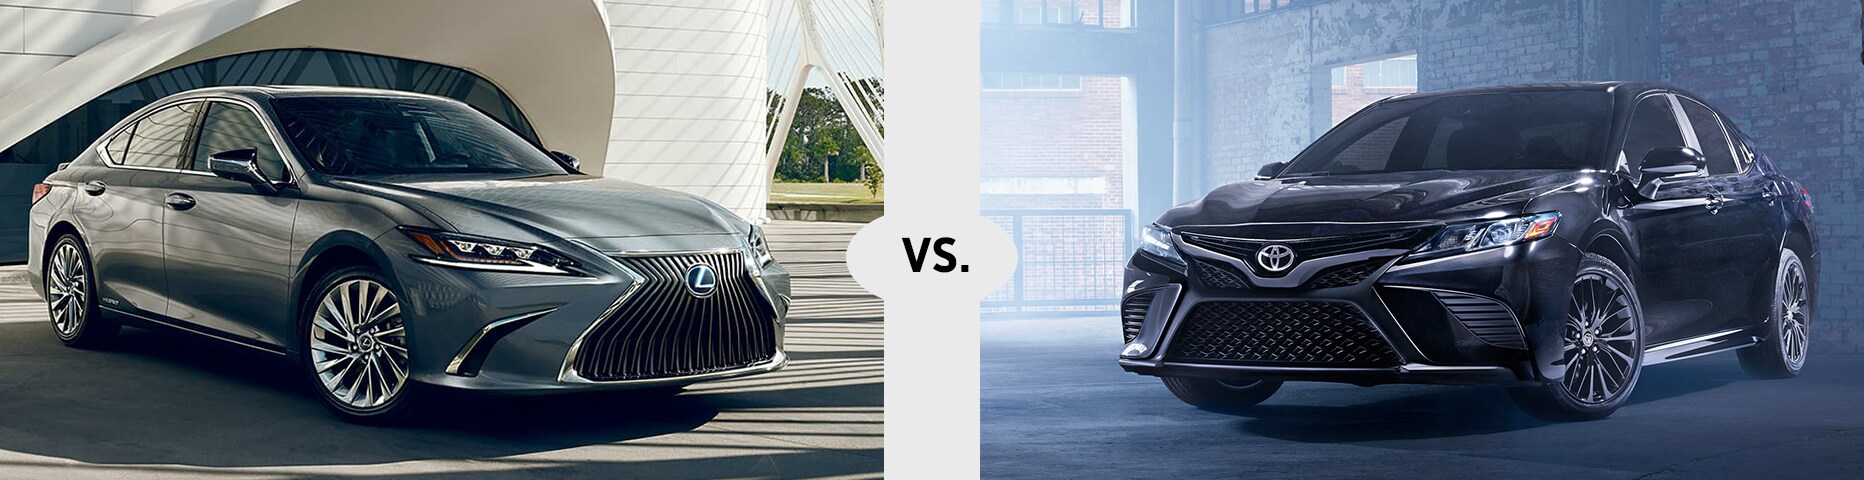 2020 Lexus ES vs. 2019 Toyota Camry